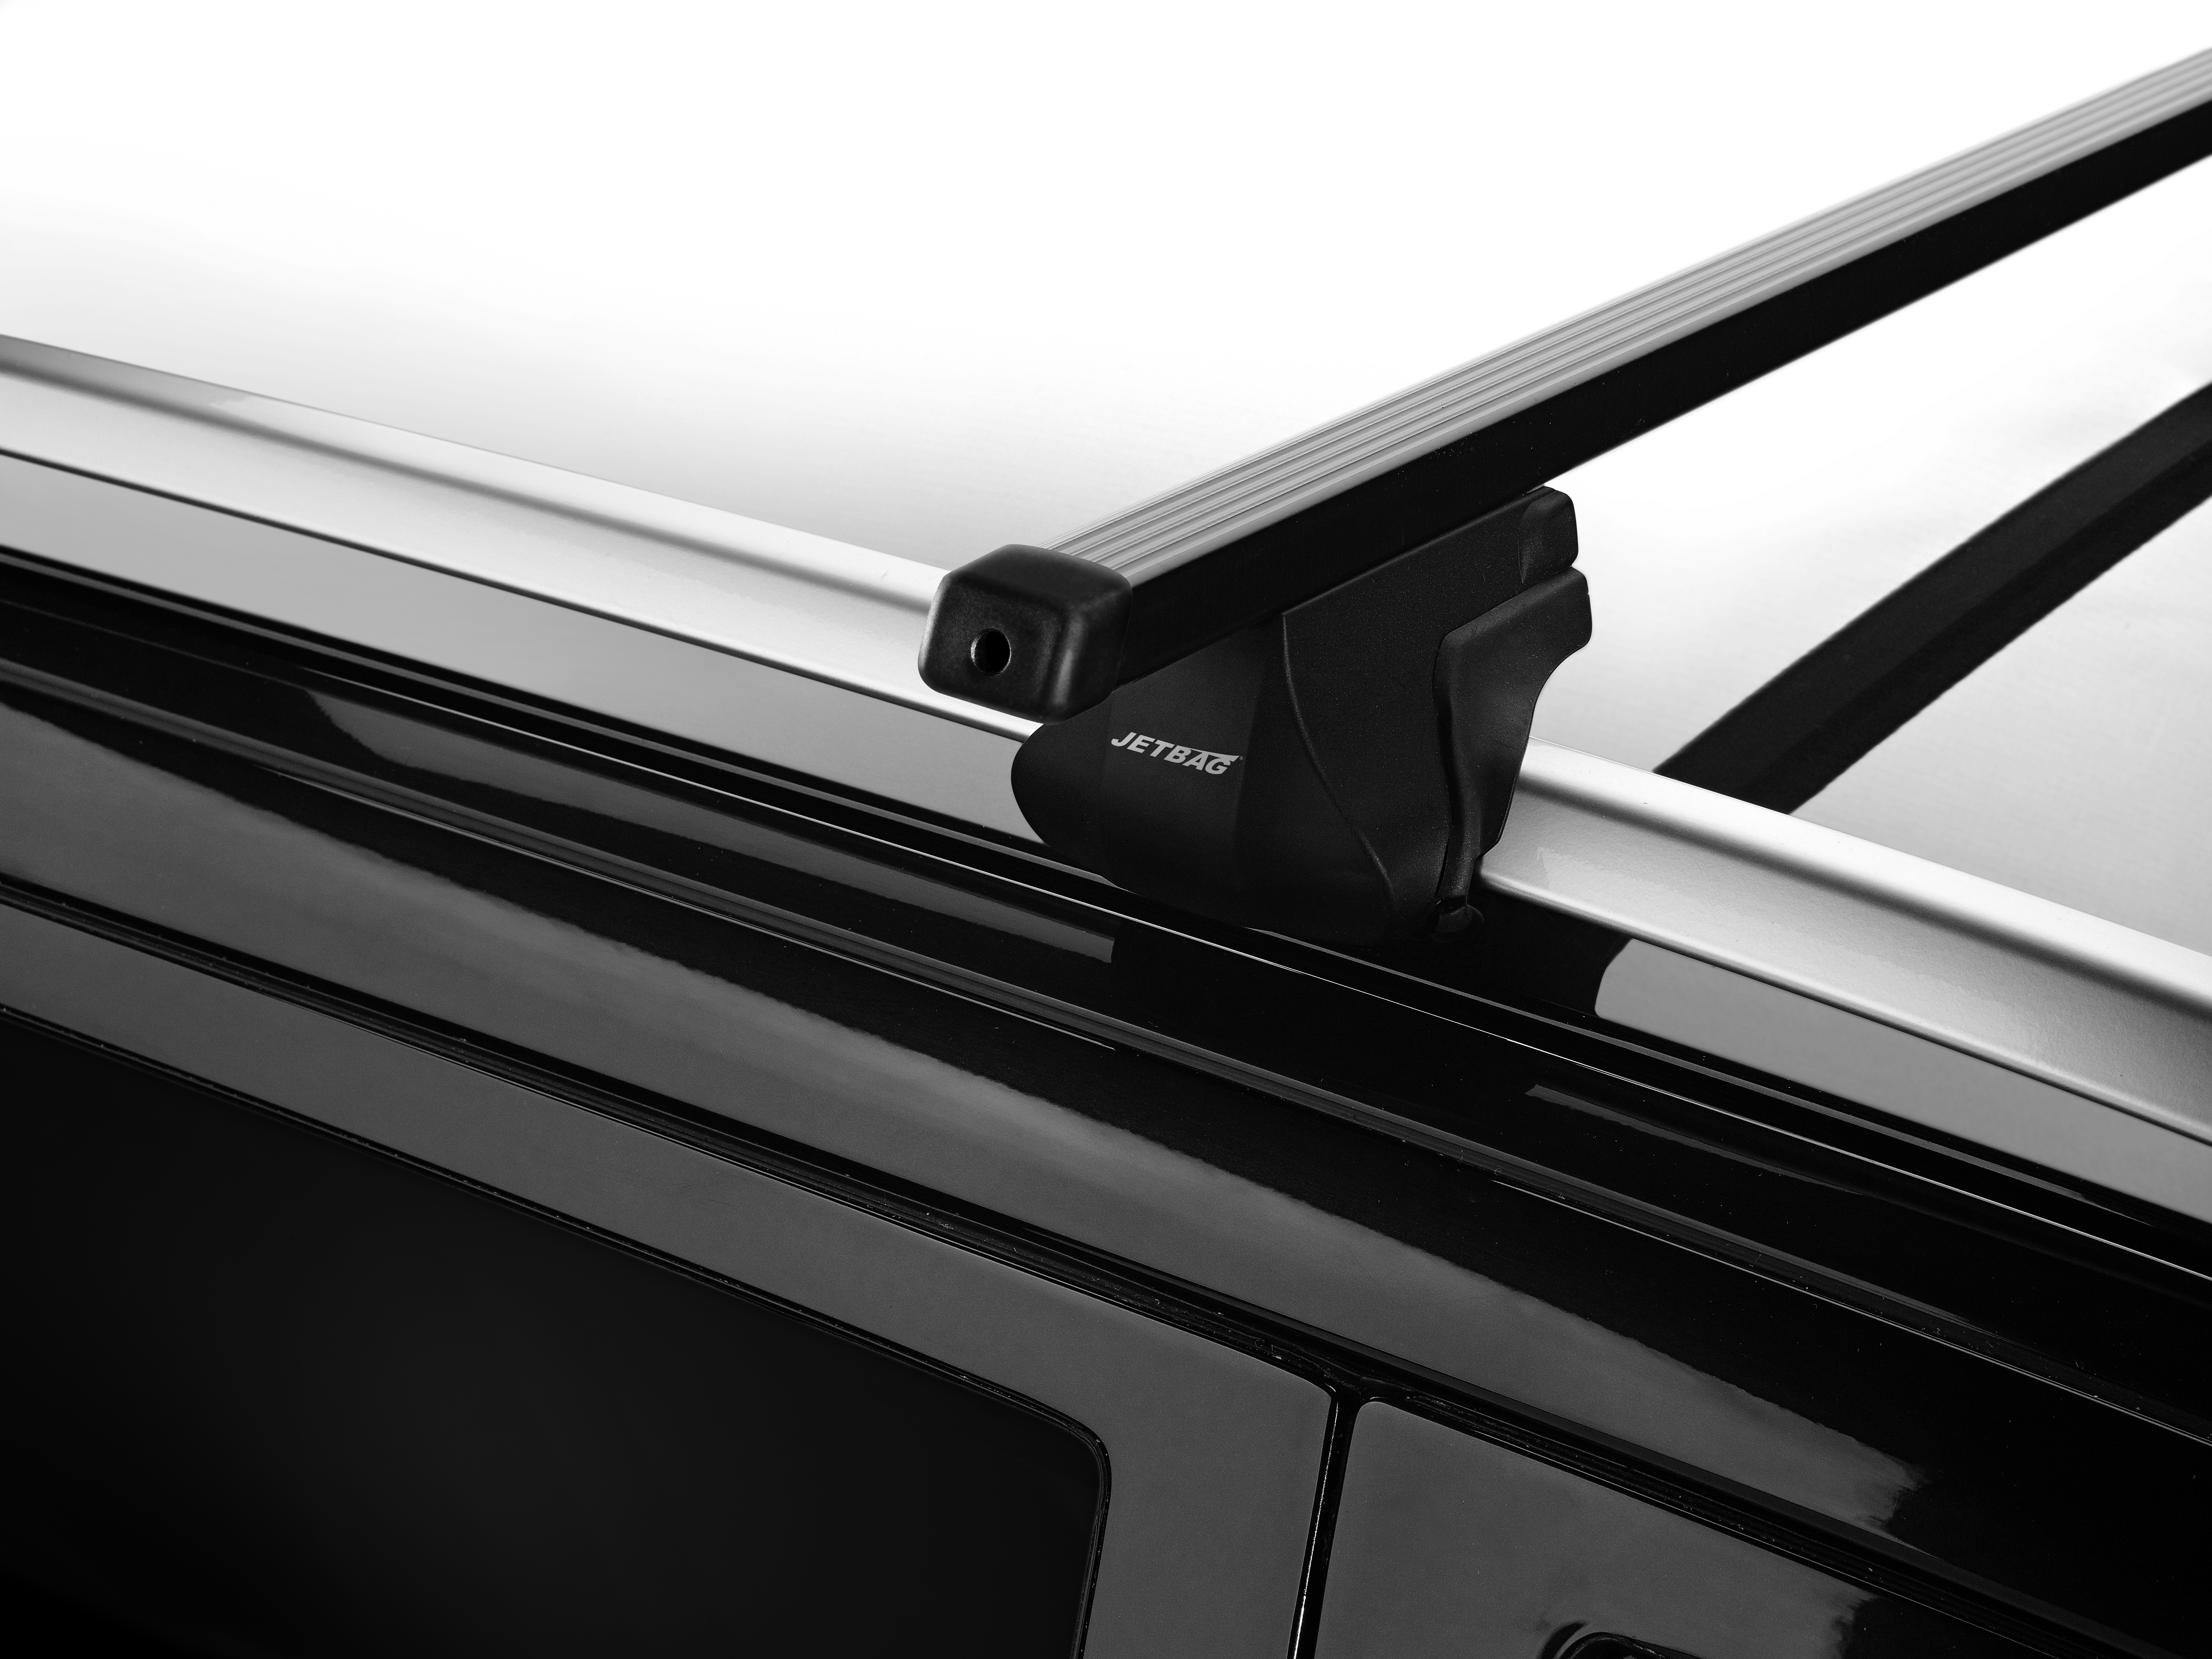 Jetbag jalkasarja kattokaiteilla varustettuihin autoihin